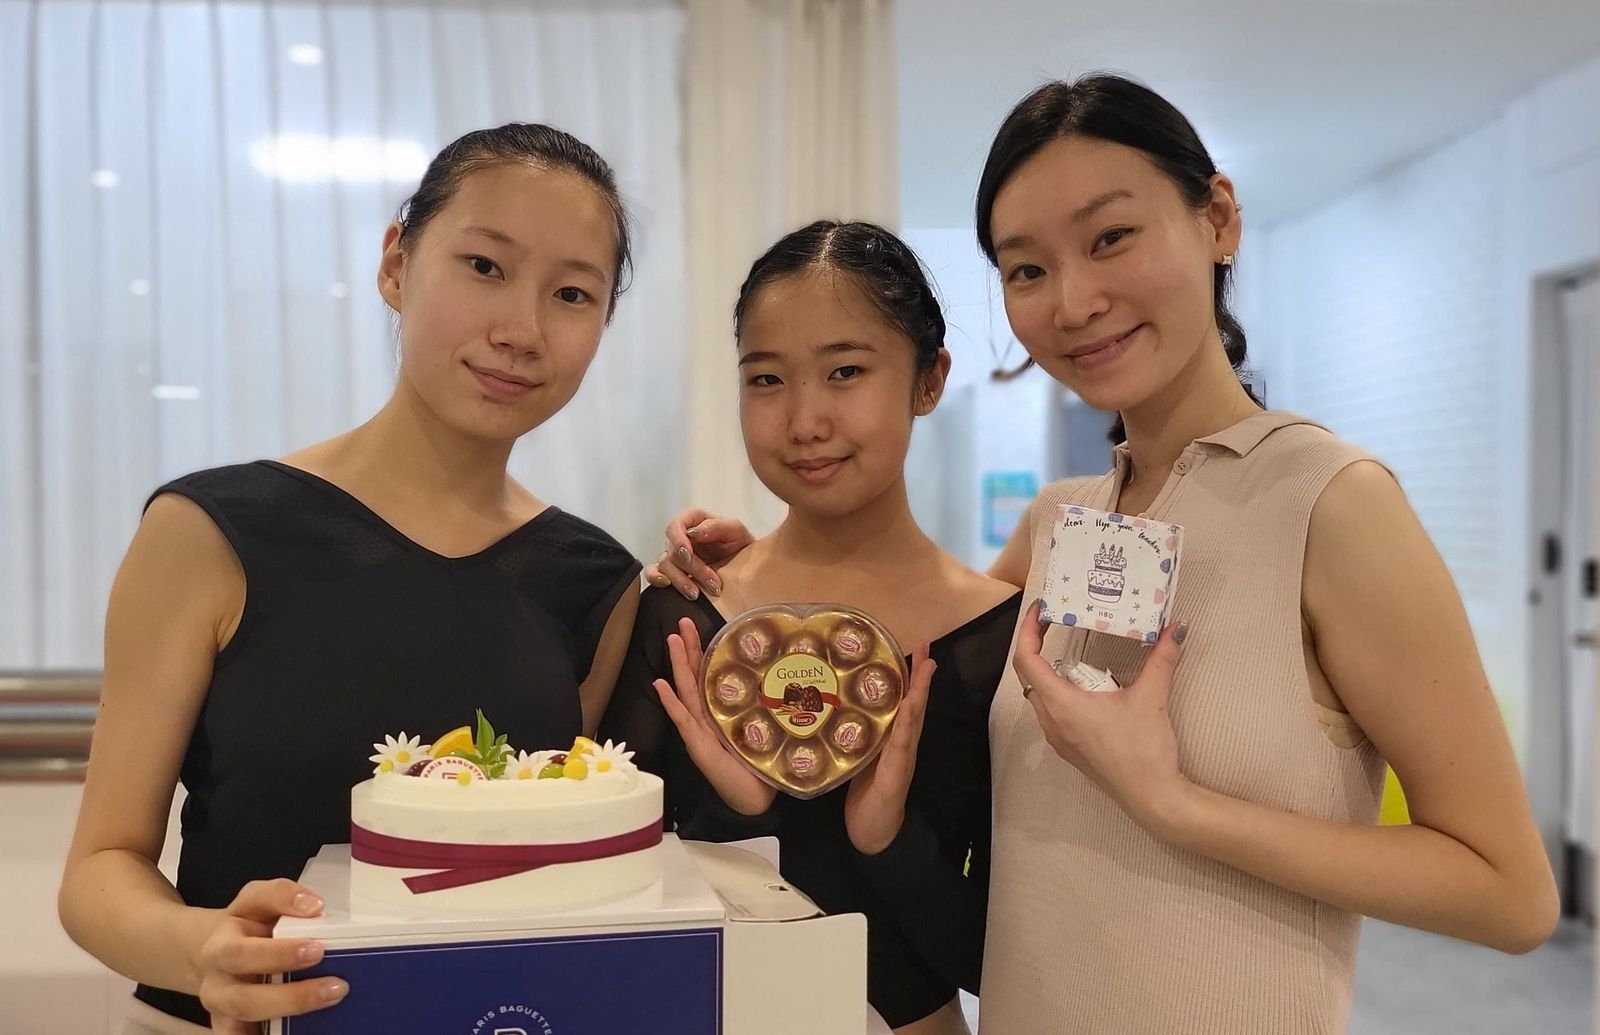 БНСУ-д болсон "KASIEA" олон улсын бүжгийн тэмцээний балетын төрөлд монгол хүүхдүүд шагналт байруудад шалгарчээ